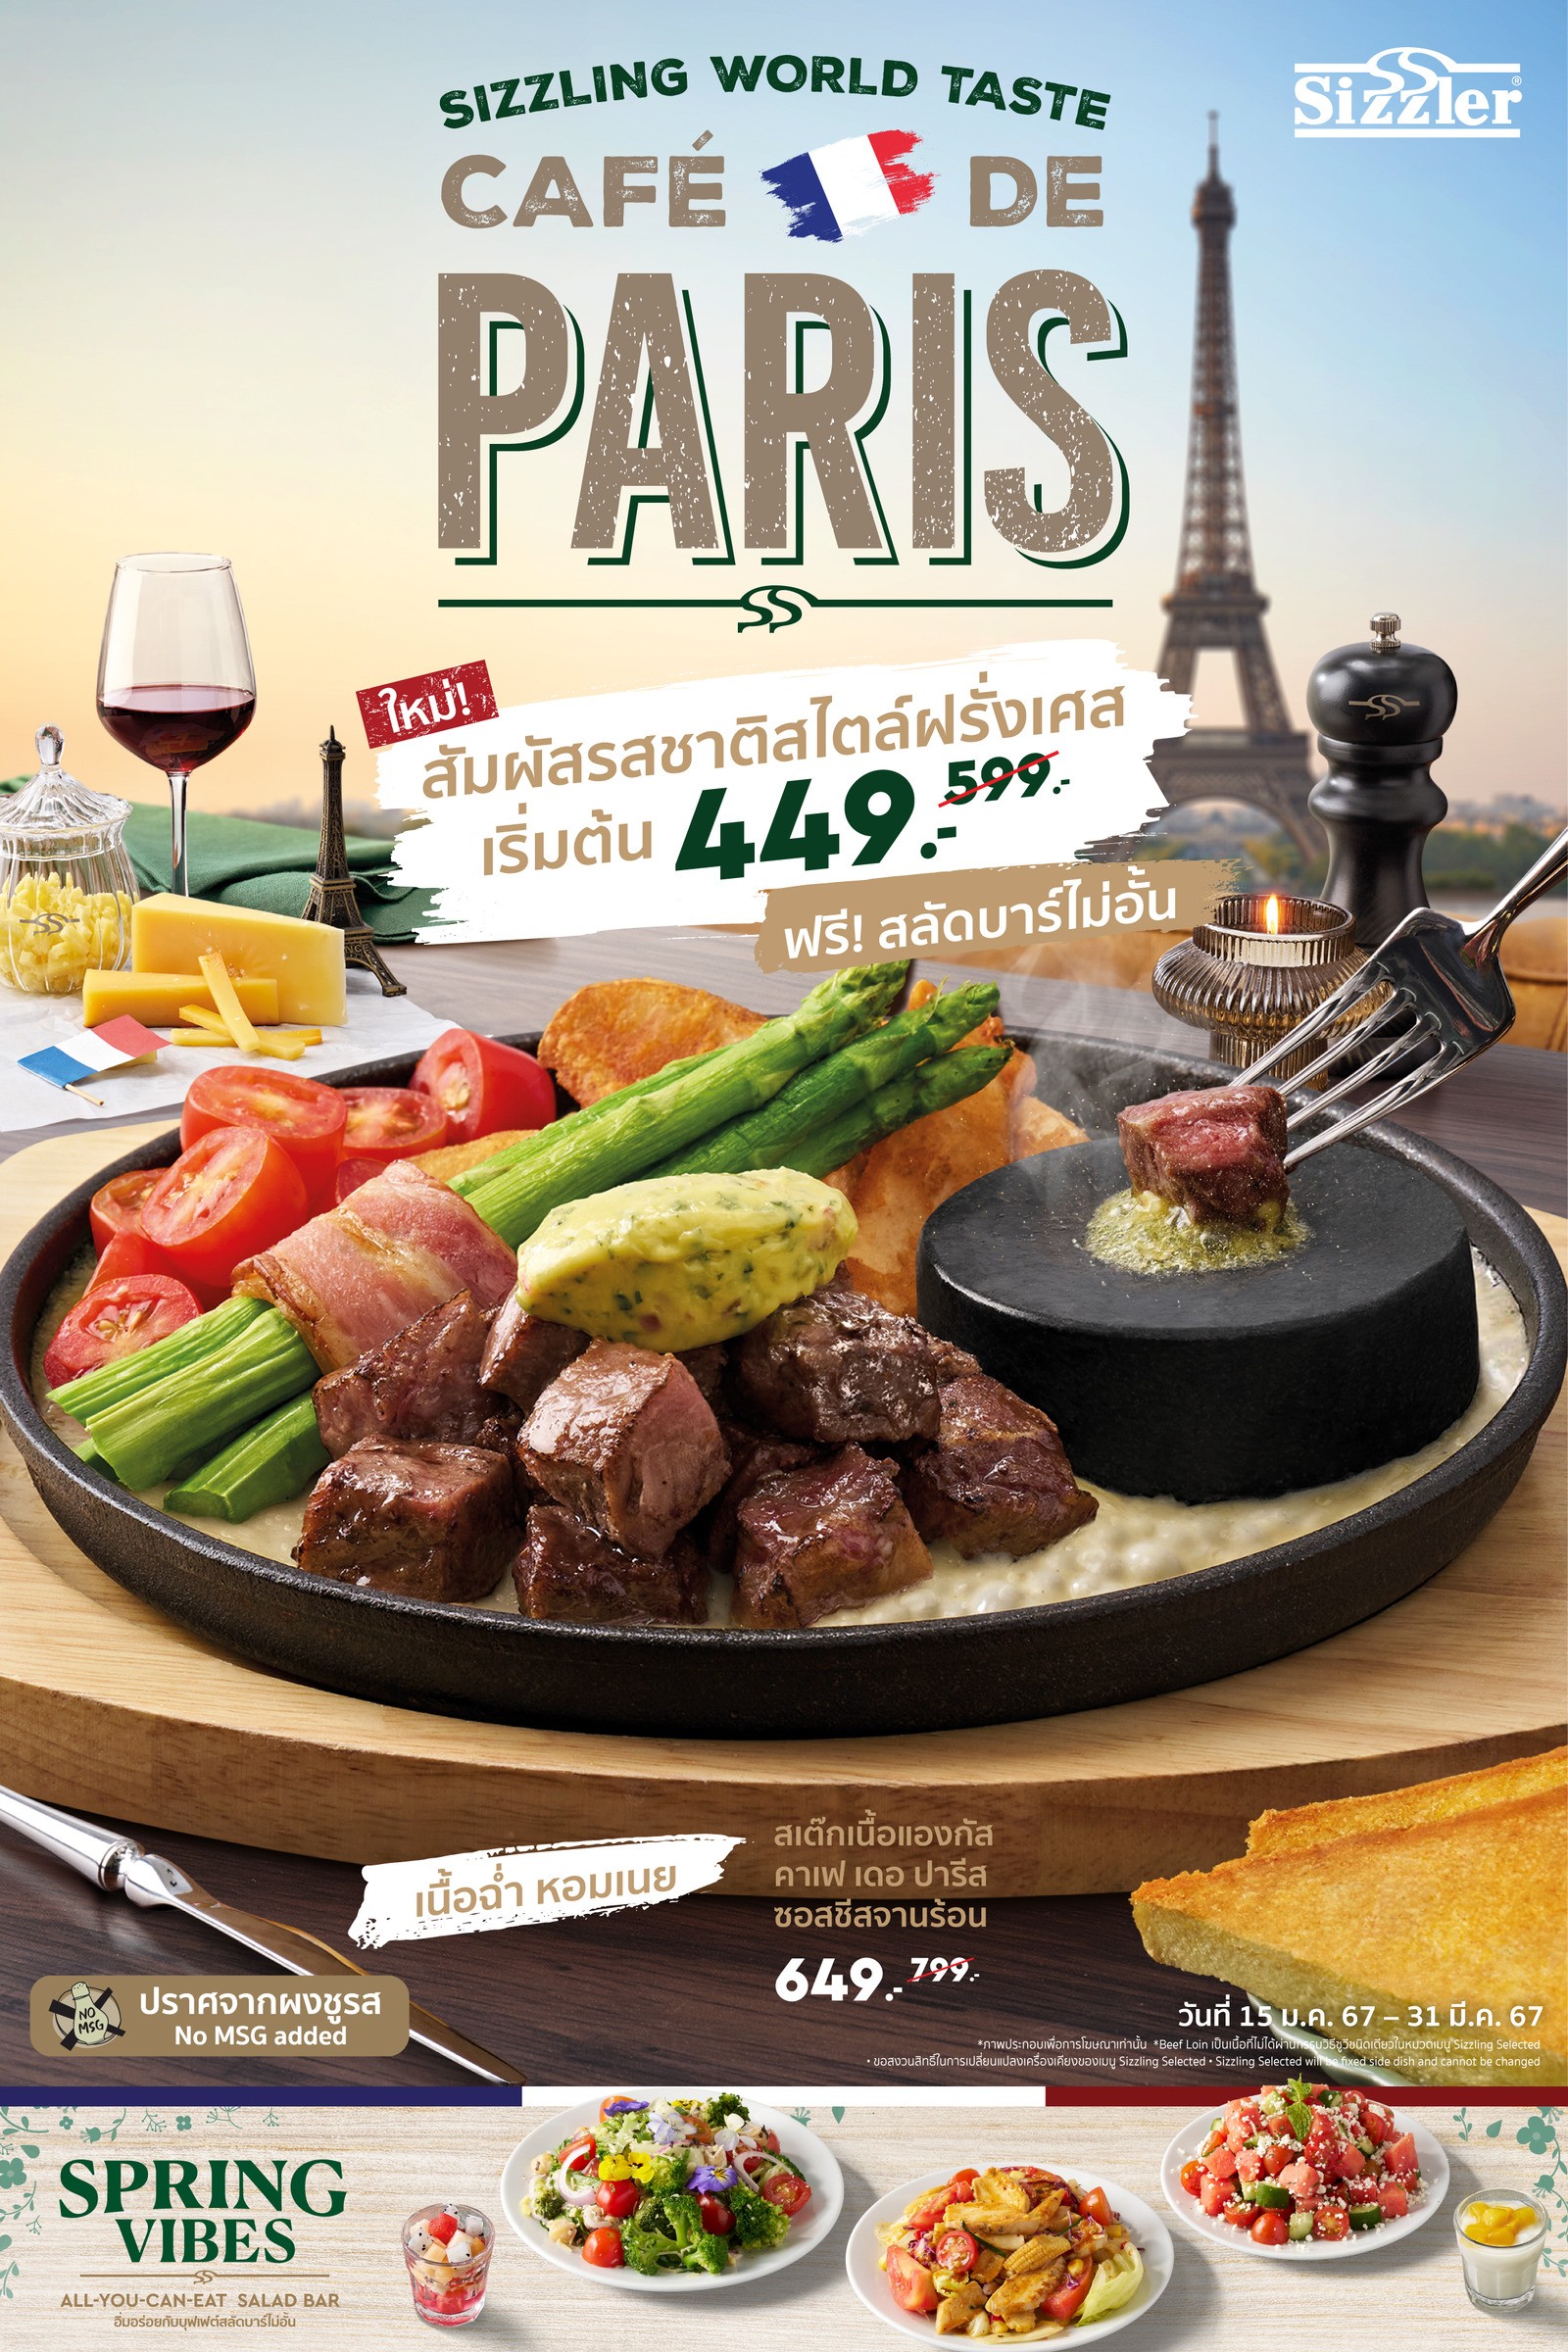 Sizzling World Taste “Cafe De Paris”